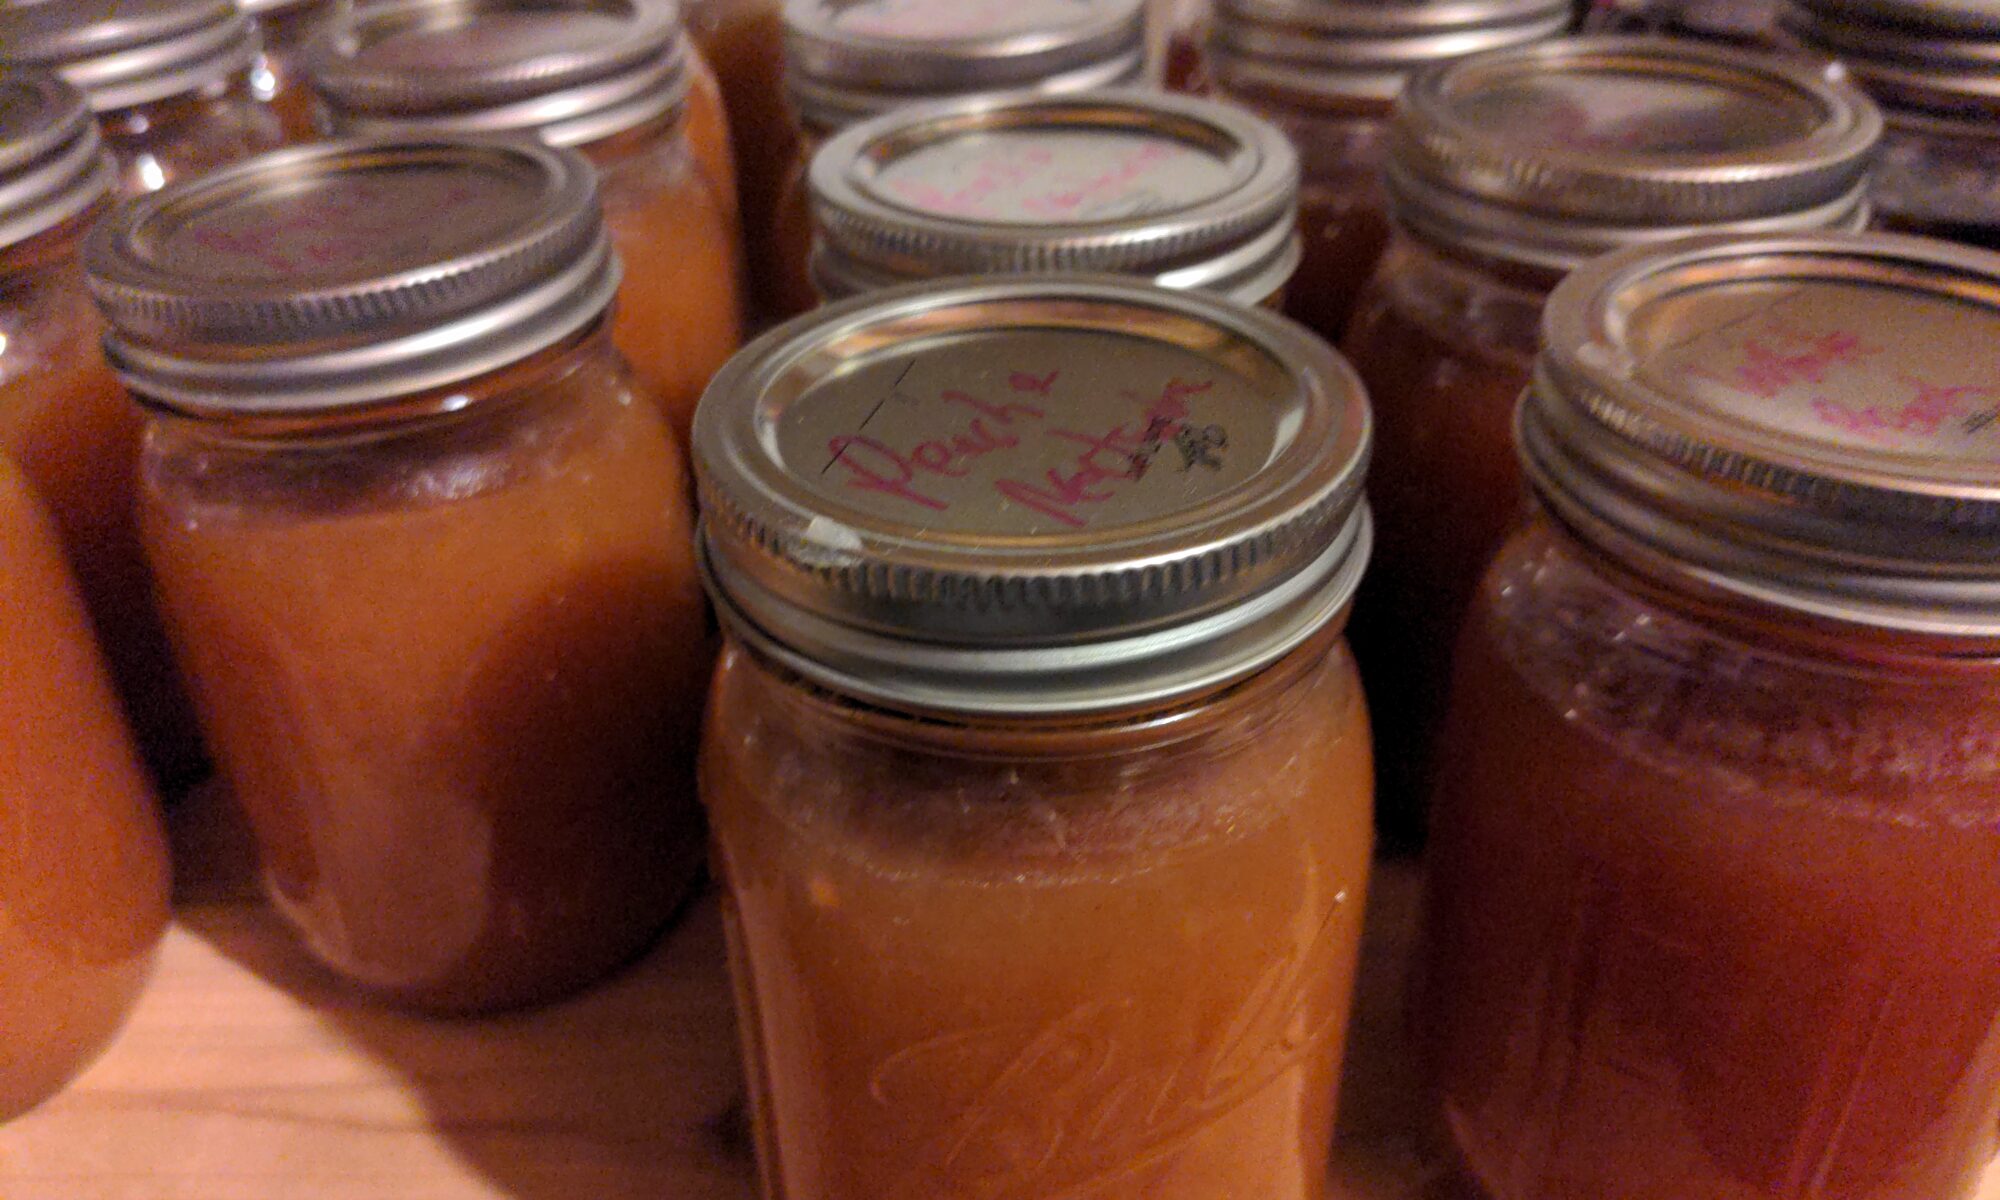 Multiple jars of peach jam.